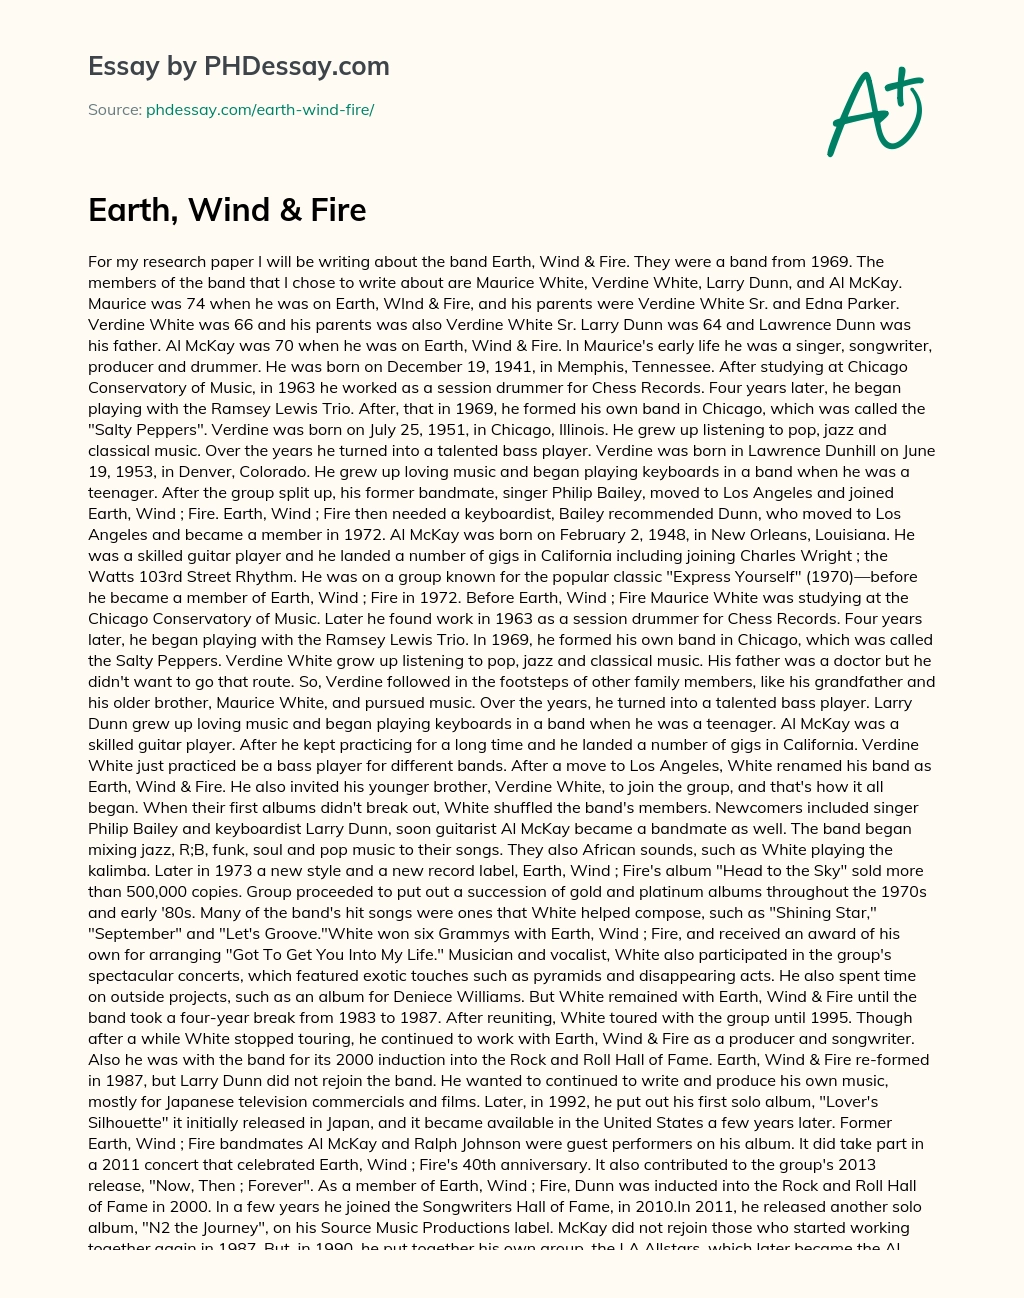 Earth, Wind & Fire essay